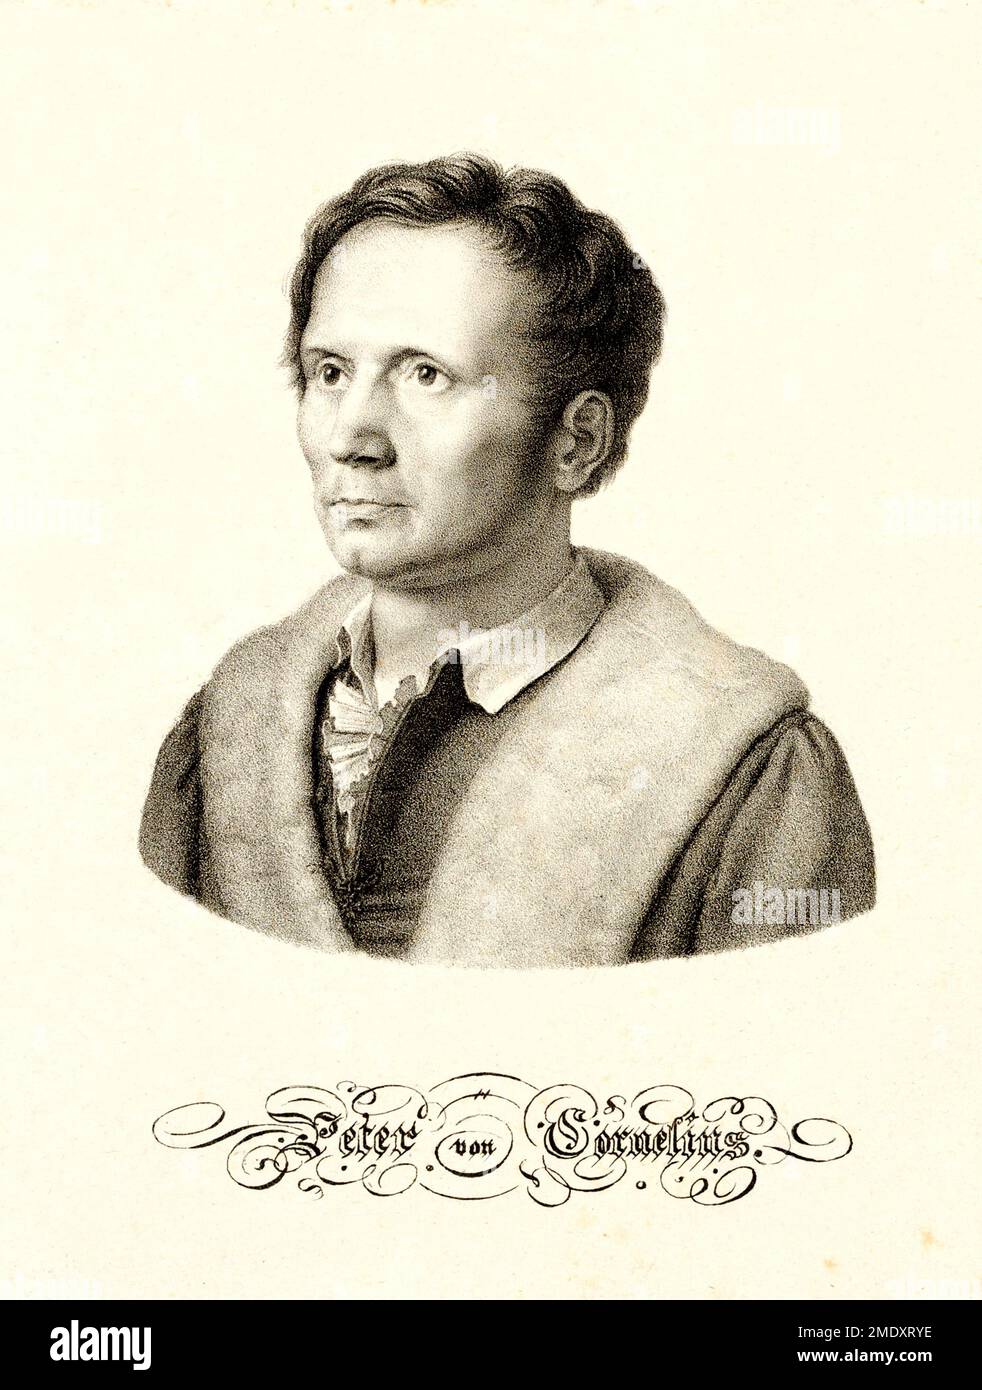 1820 ca , GERMANIA : il pittore tedesco PETER von CORNELIUS ( 1783 - 1867 ), rappresentanti del movimento Nazareno , dal 1811 al 1819 a Roma (ITALIA) . Incisore sconosciuto . - PITTORI MOVIMENTO DEI NAZARENI - NAZARENO - ARTS - ARTI VISIVE - ARTE - GERMANIA - RITRATTO - RITRATTO - STORIA - FOTO STORICHE - 800 - '800 - OTTOCENTO - ILLUSTRAZIONE - ILLUSTRAZIONE - INCISIONE ---- ARCHIVIO GBB Foto Stock